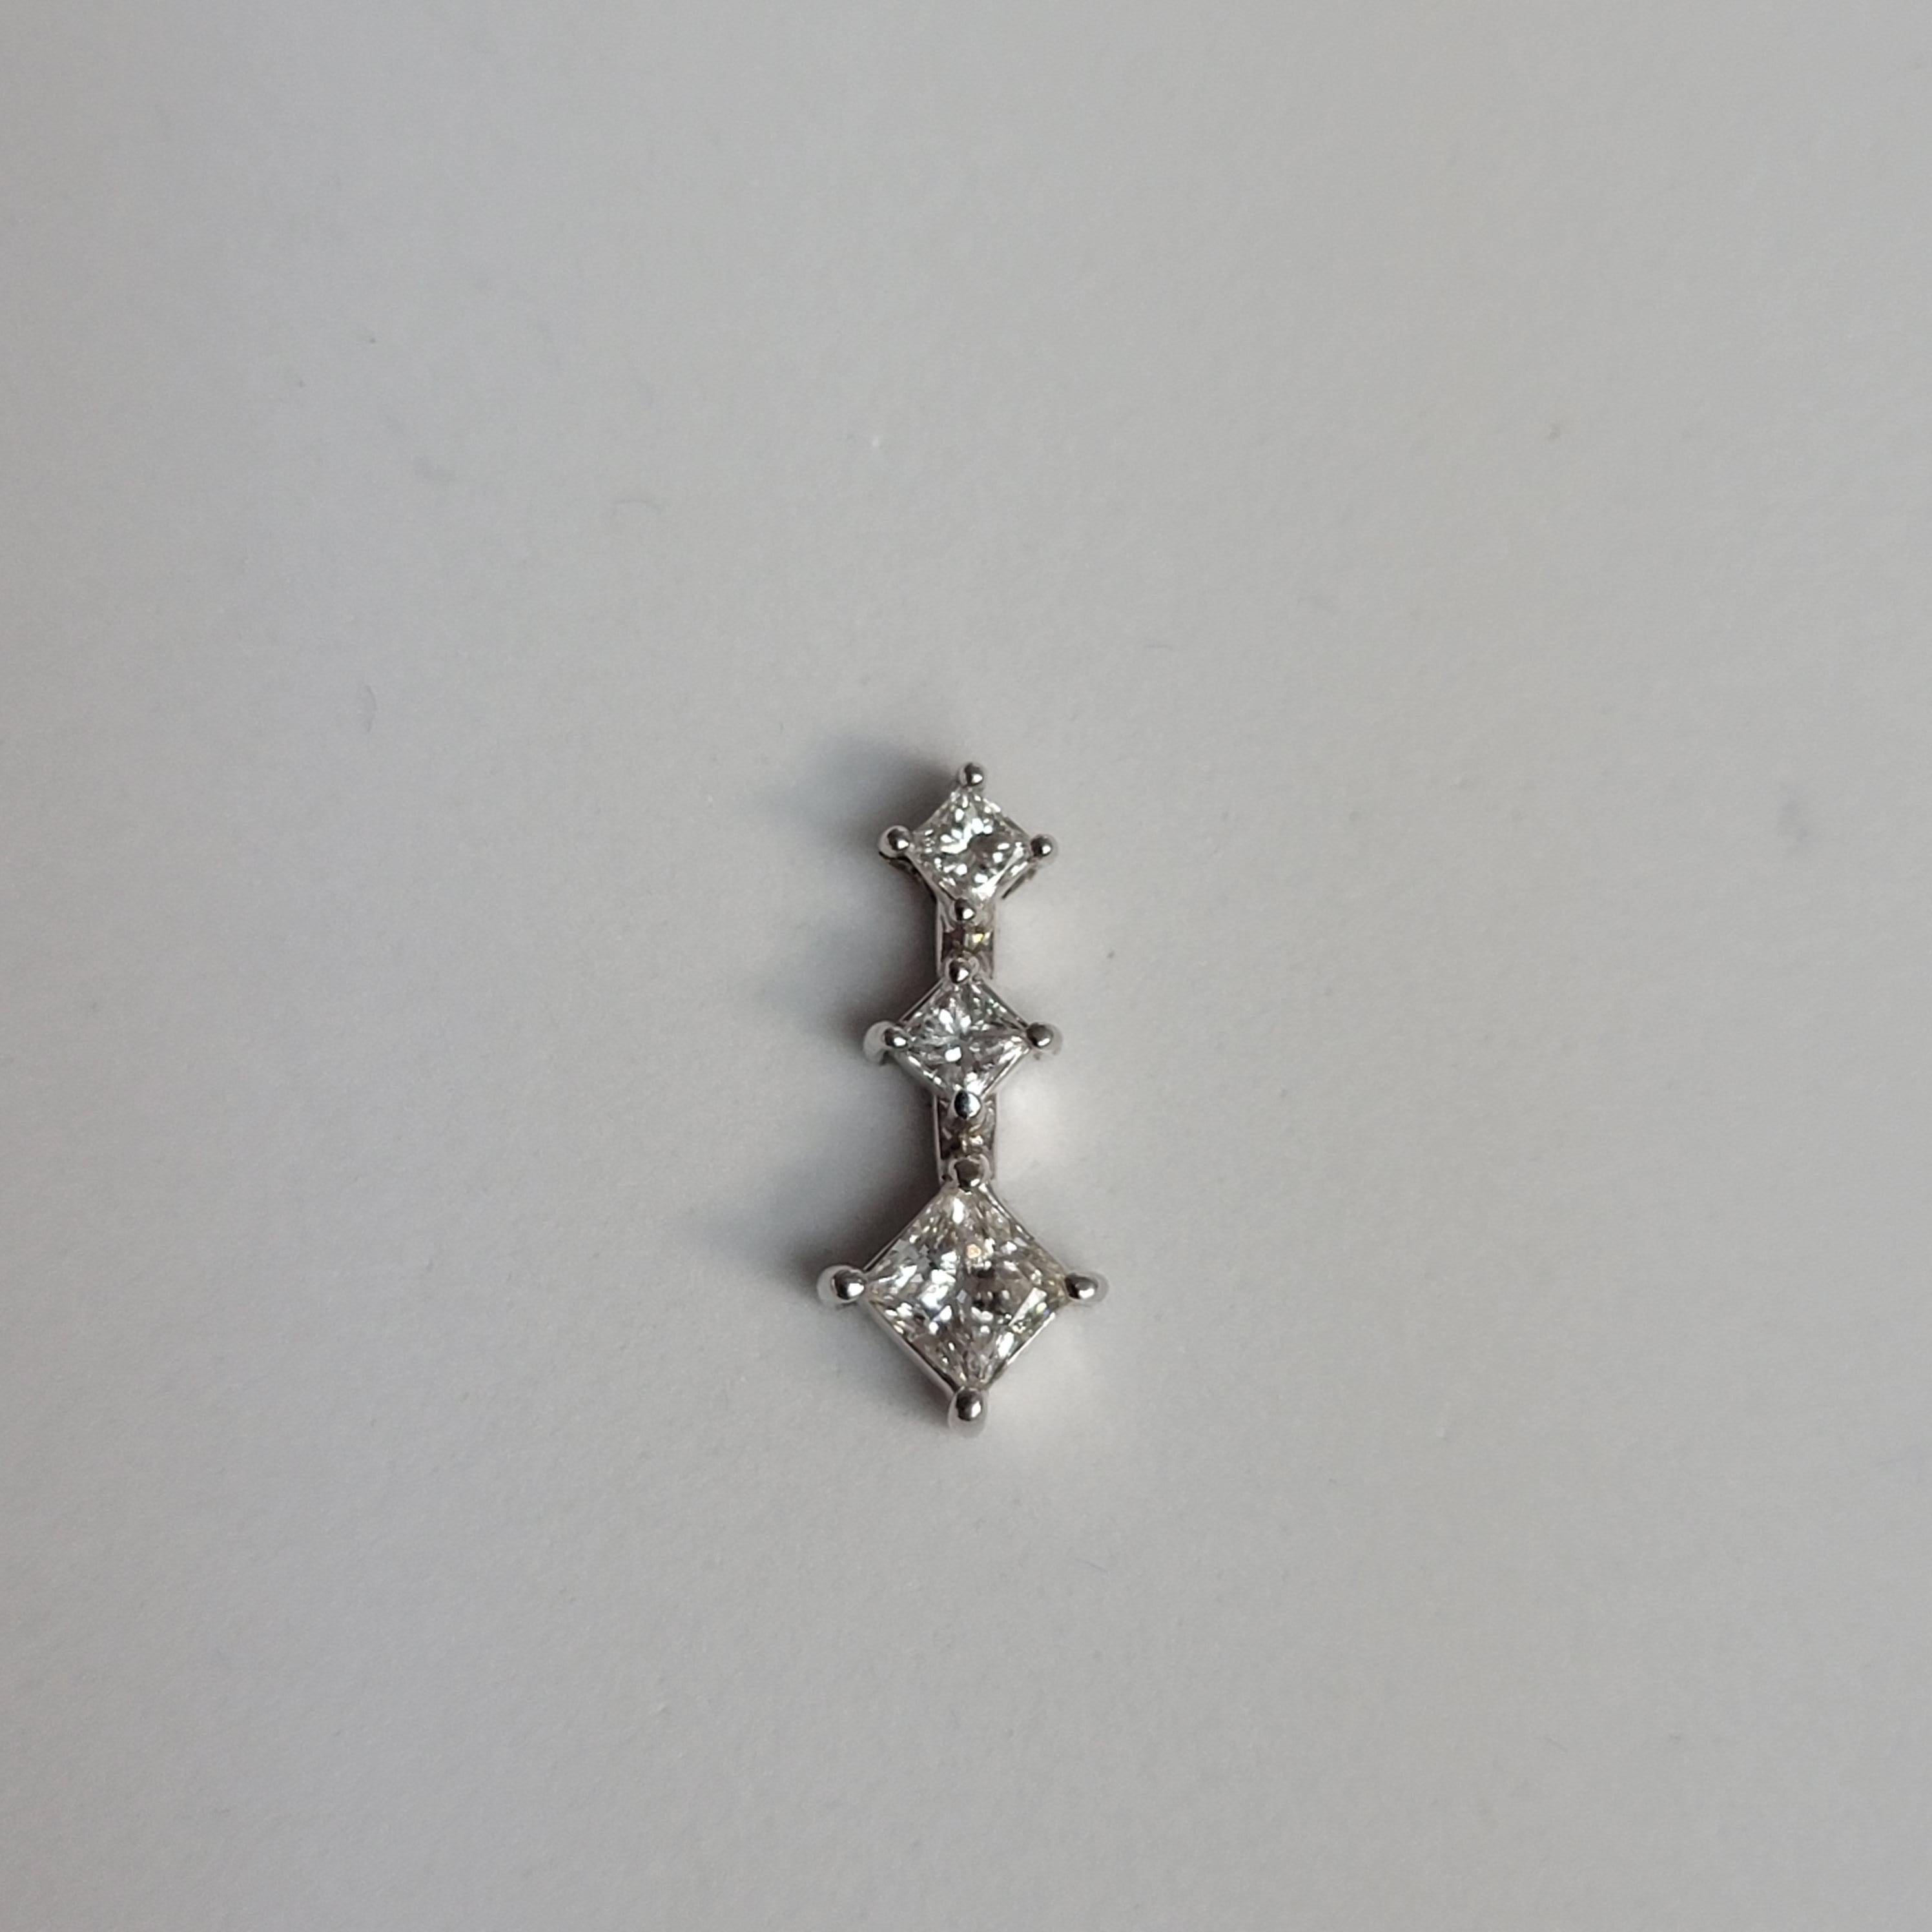 Halskette mit Diamanten im Prinzessinnenschliff in Past, Present, Future 1,29cttw - 14k Weißgold (Carréschliff) im Angebot